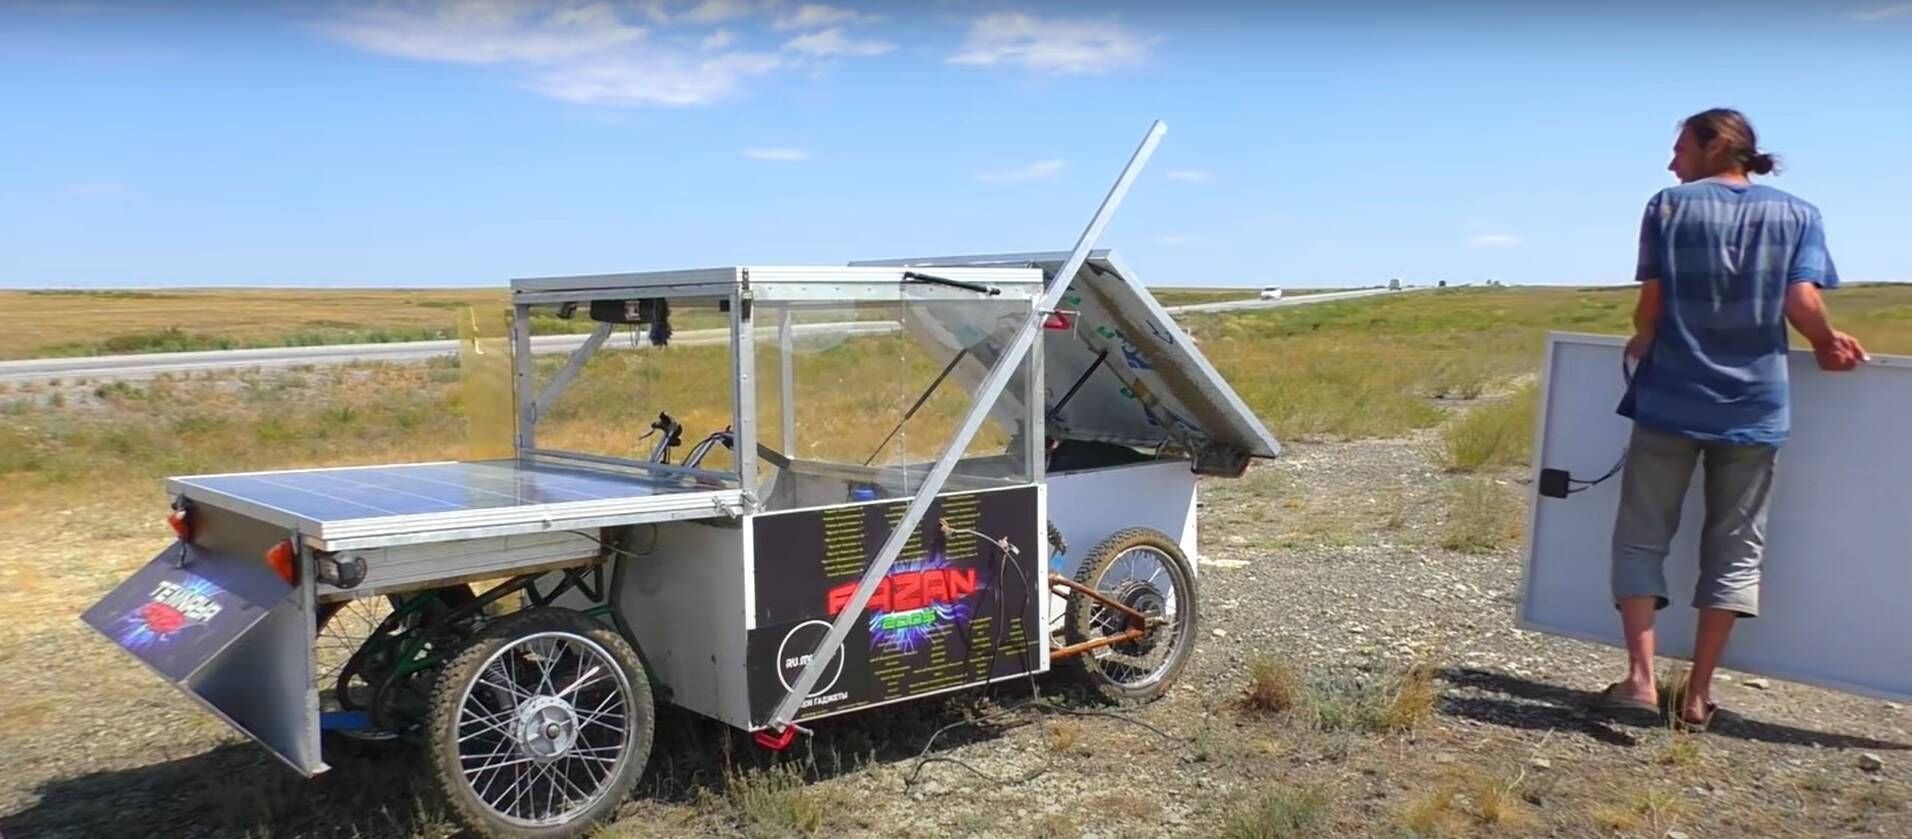 Russo de 23 anos cria carro elétrico movido a energia solar | Carros | iG